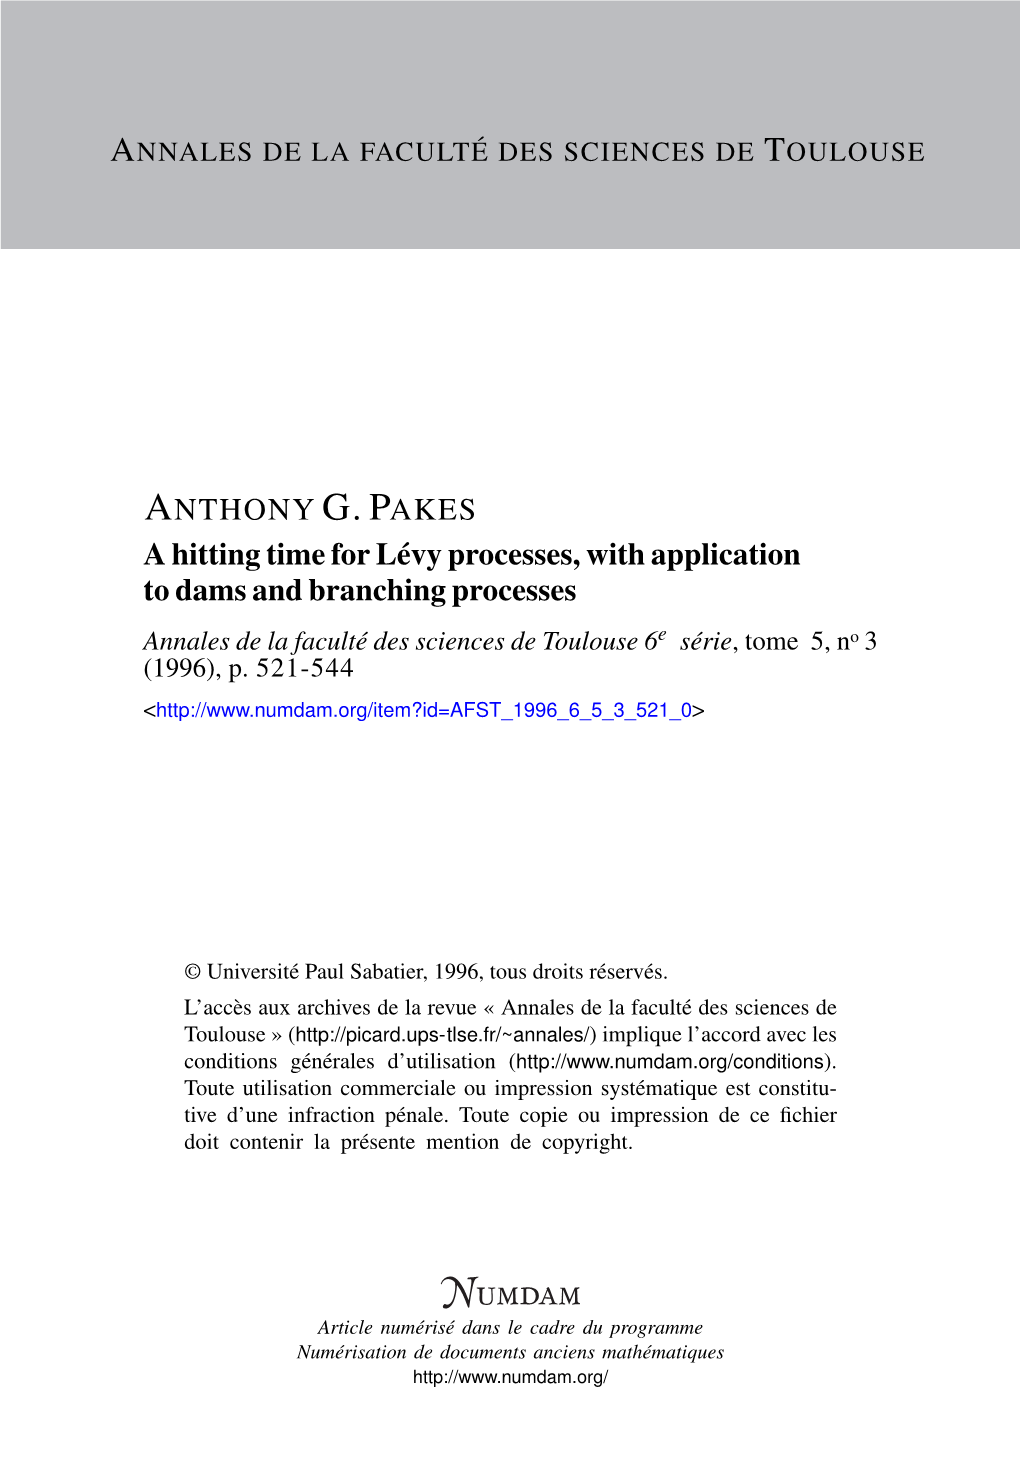 A Hitting Time for Lévy Processes, with Application to Dams and Branching Processes Annales De La Faculté Des Sciences De Toulouse 6E Série, Tome 5, No 3 (1996), P